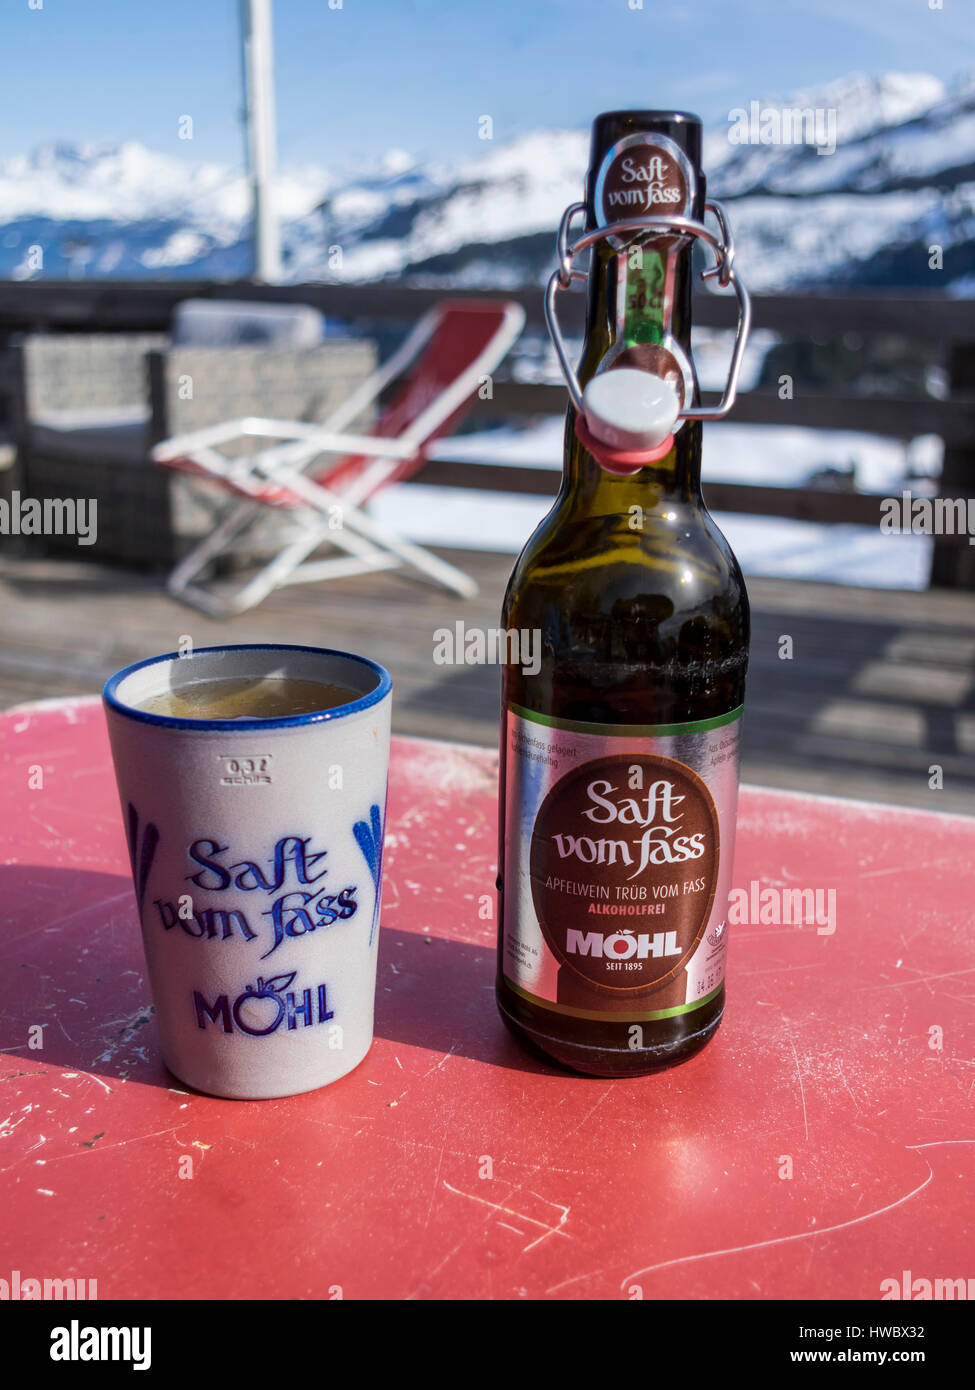 Botella de no alcohólicas Apfelwein Möhl 'Saft Vom Fass', una sidra tradicional suiza, con un vaso de cerámica. Fondo alpino. Foto de stock